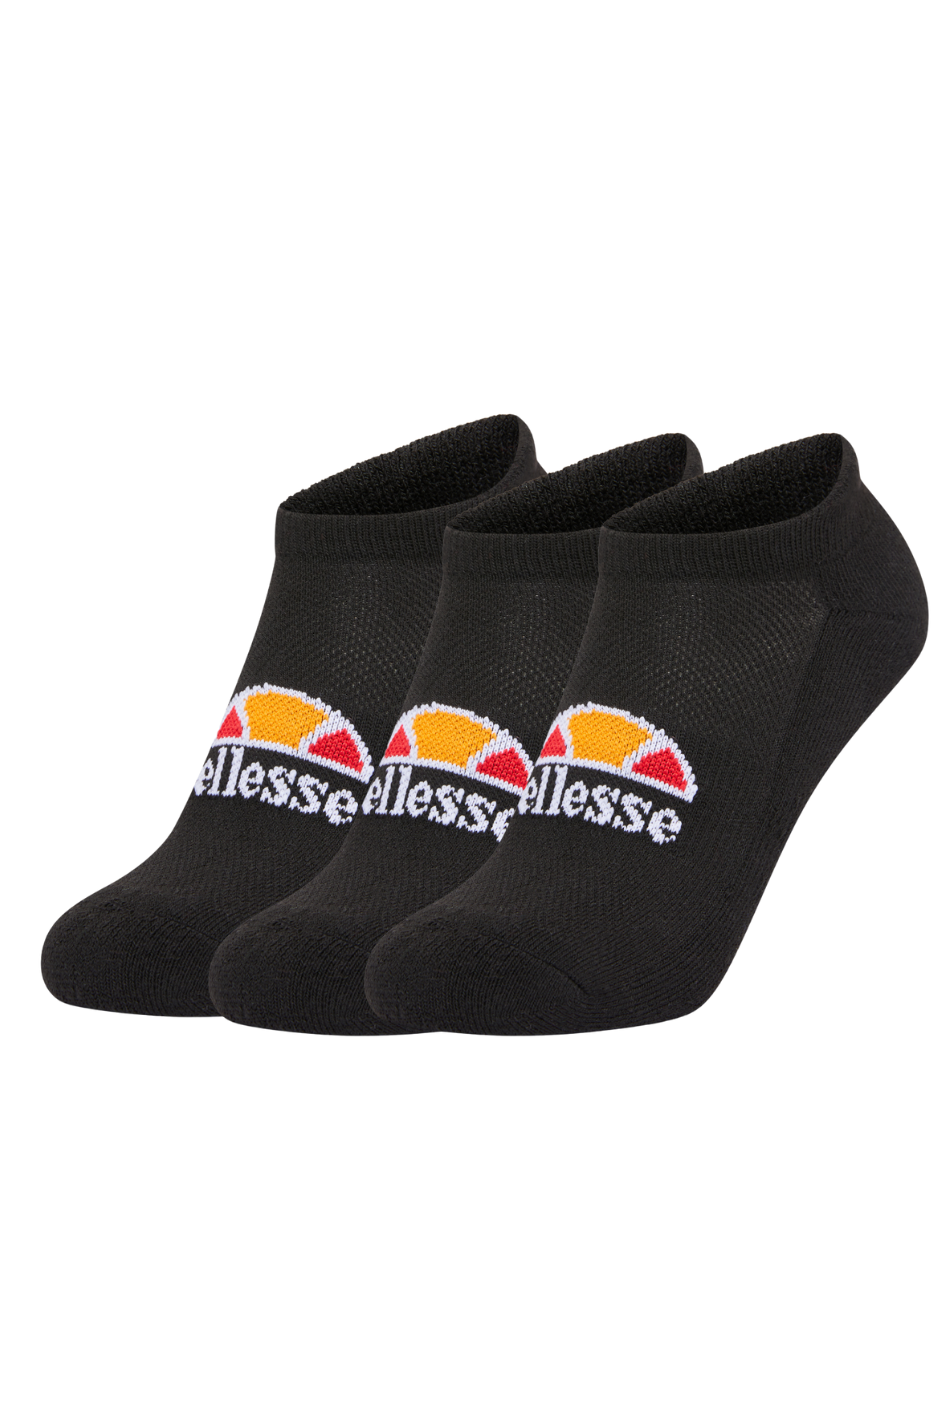 Ellesse 3 Pack Trainer Liner Sock